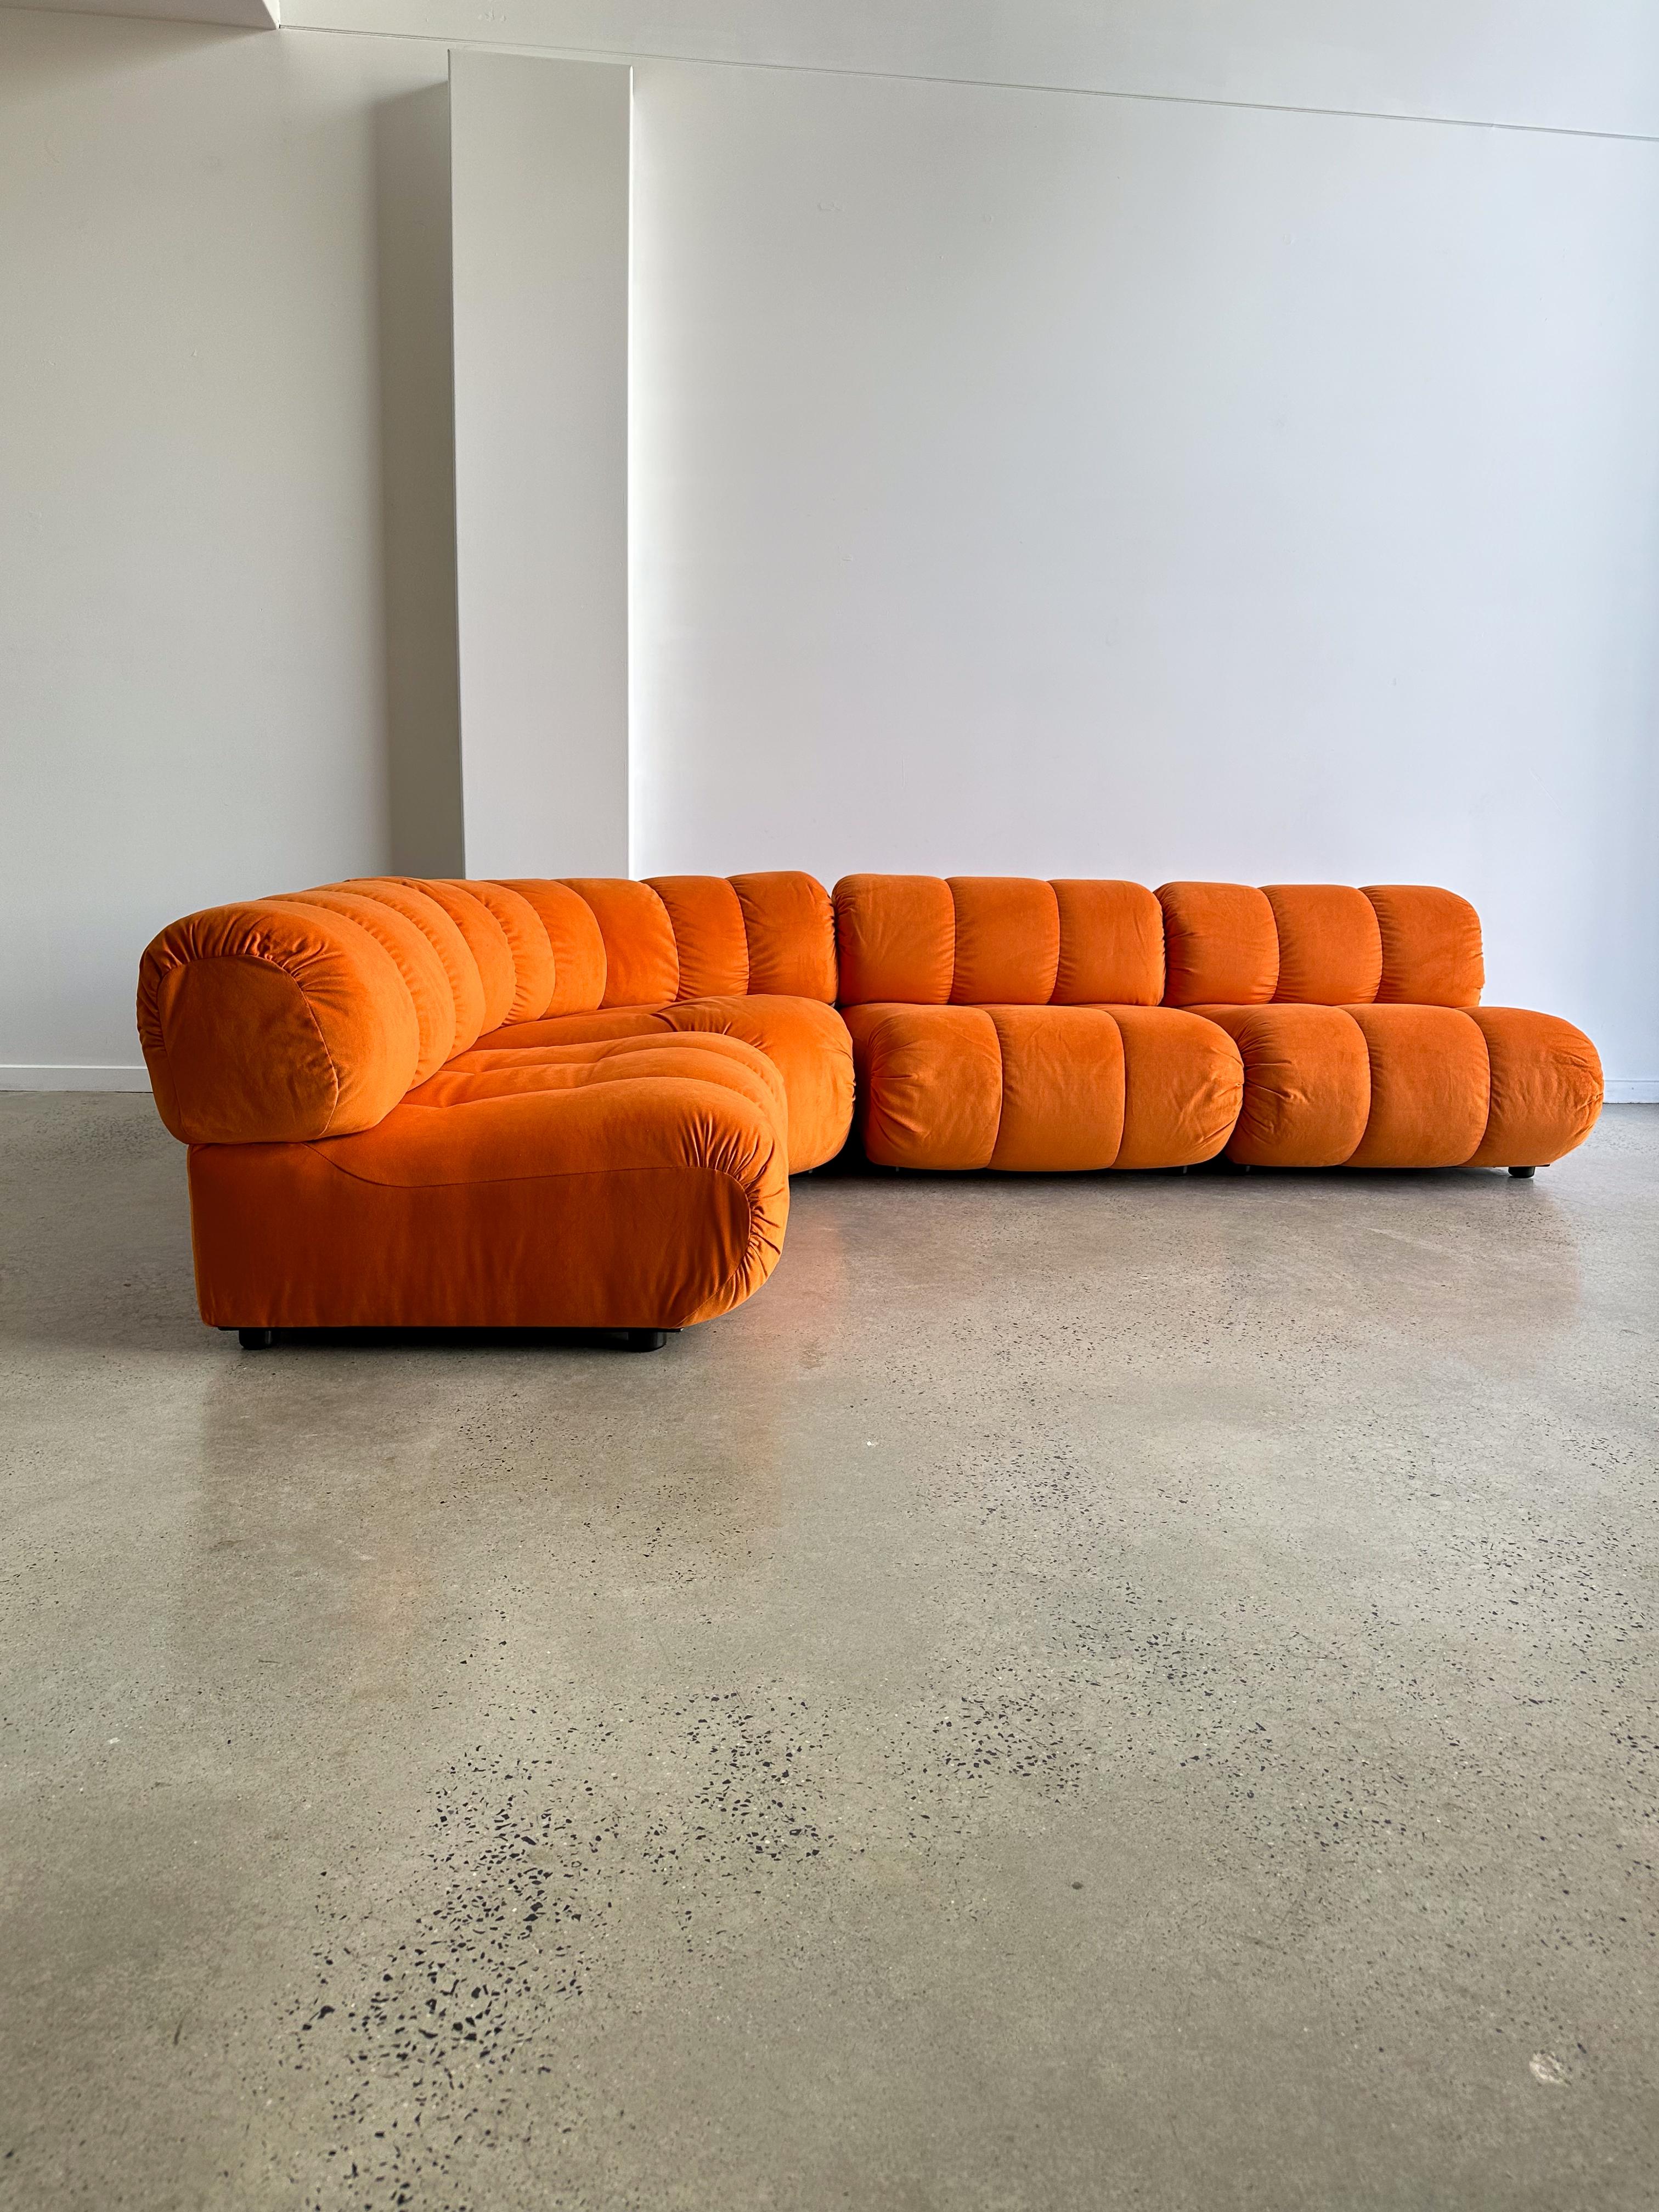 Ensemble de quatre canapés modulaires italiens Mid Century Modern orange par Giuseppe Munari pour Poltronova 1970.

Nouvellement retapissé professionnellement en Italie avec du tissu orange. 

Un canapé modulaire est une solution d'assise